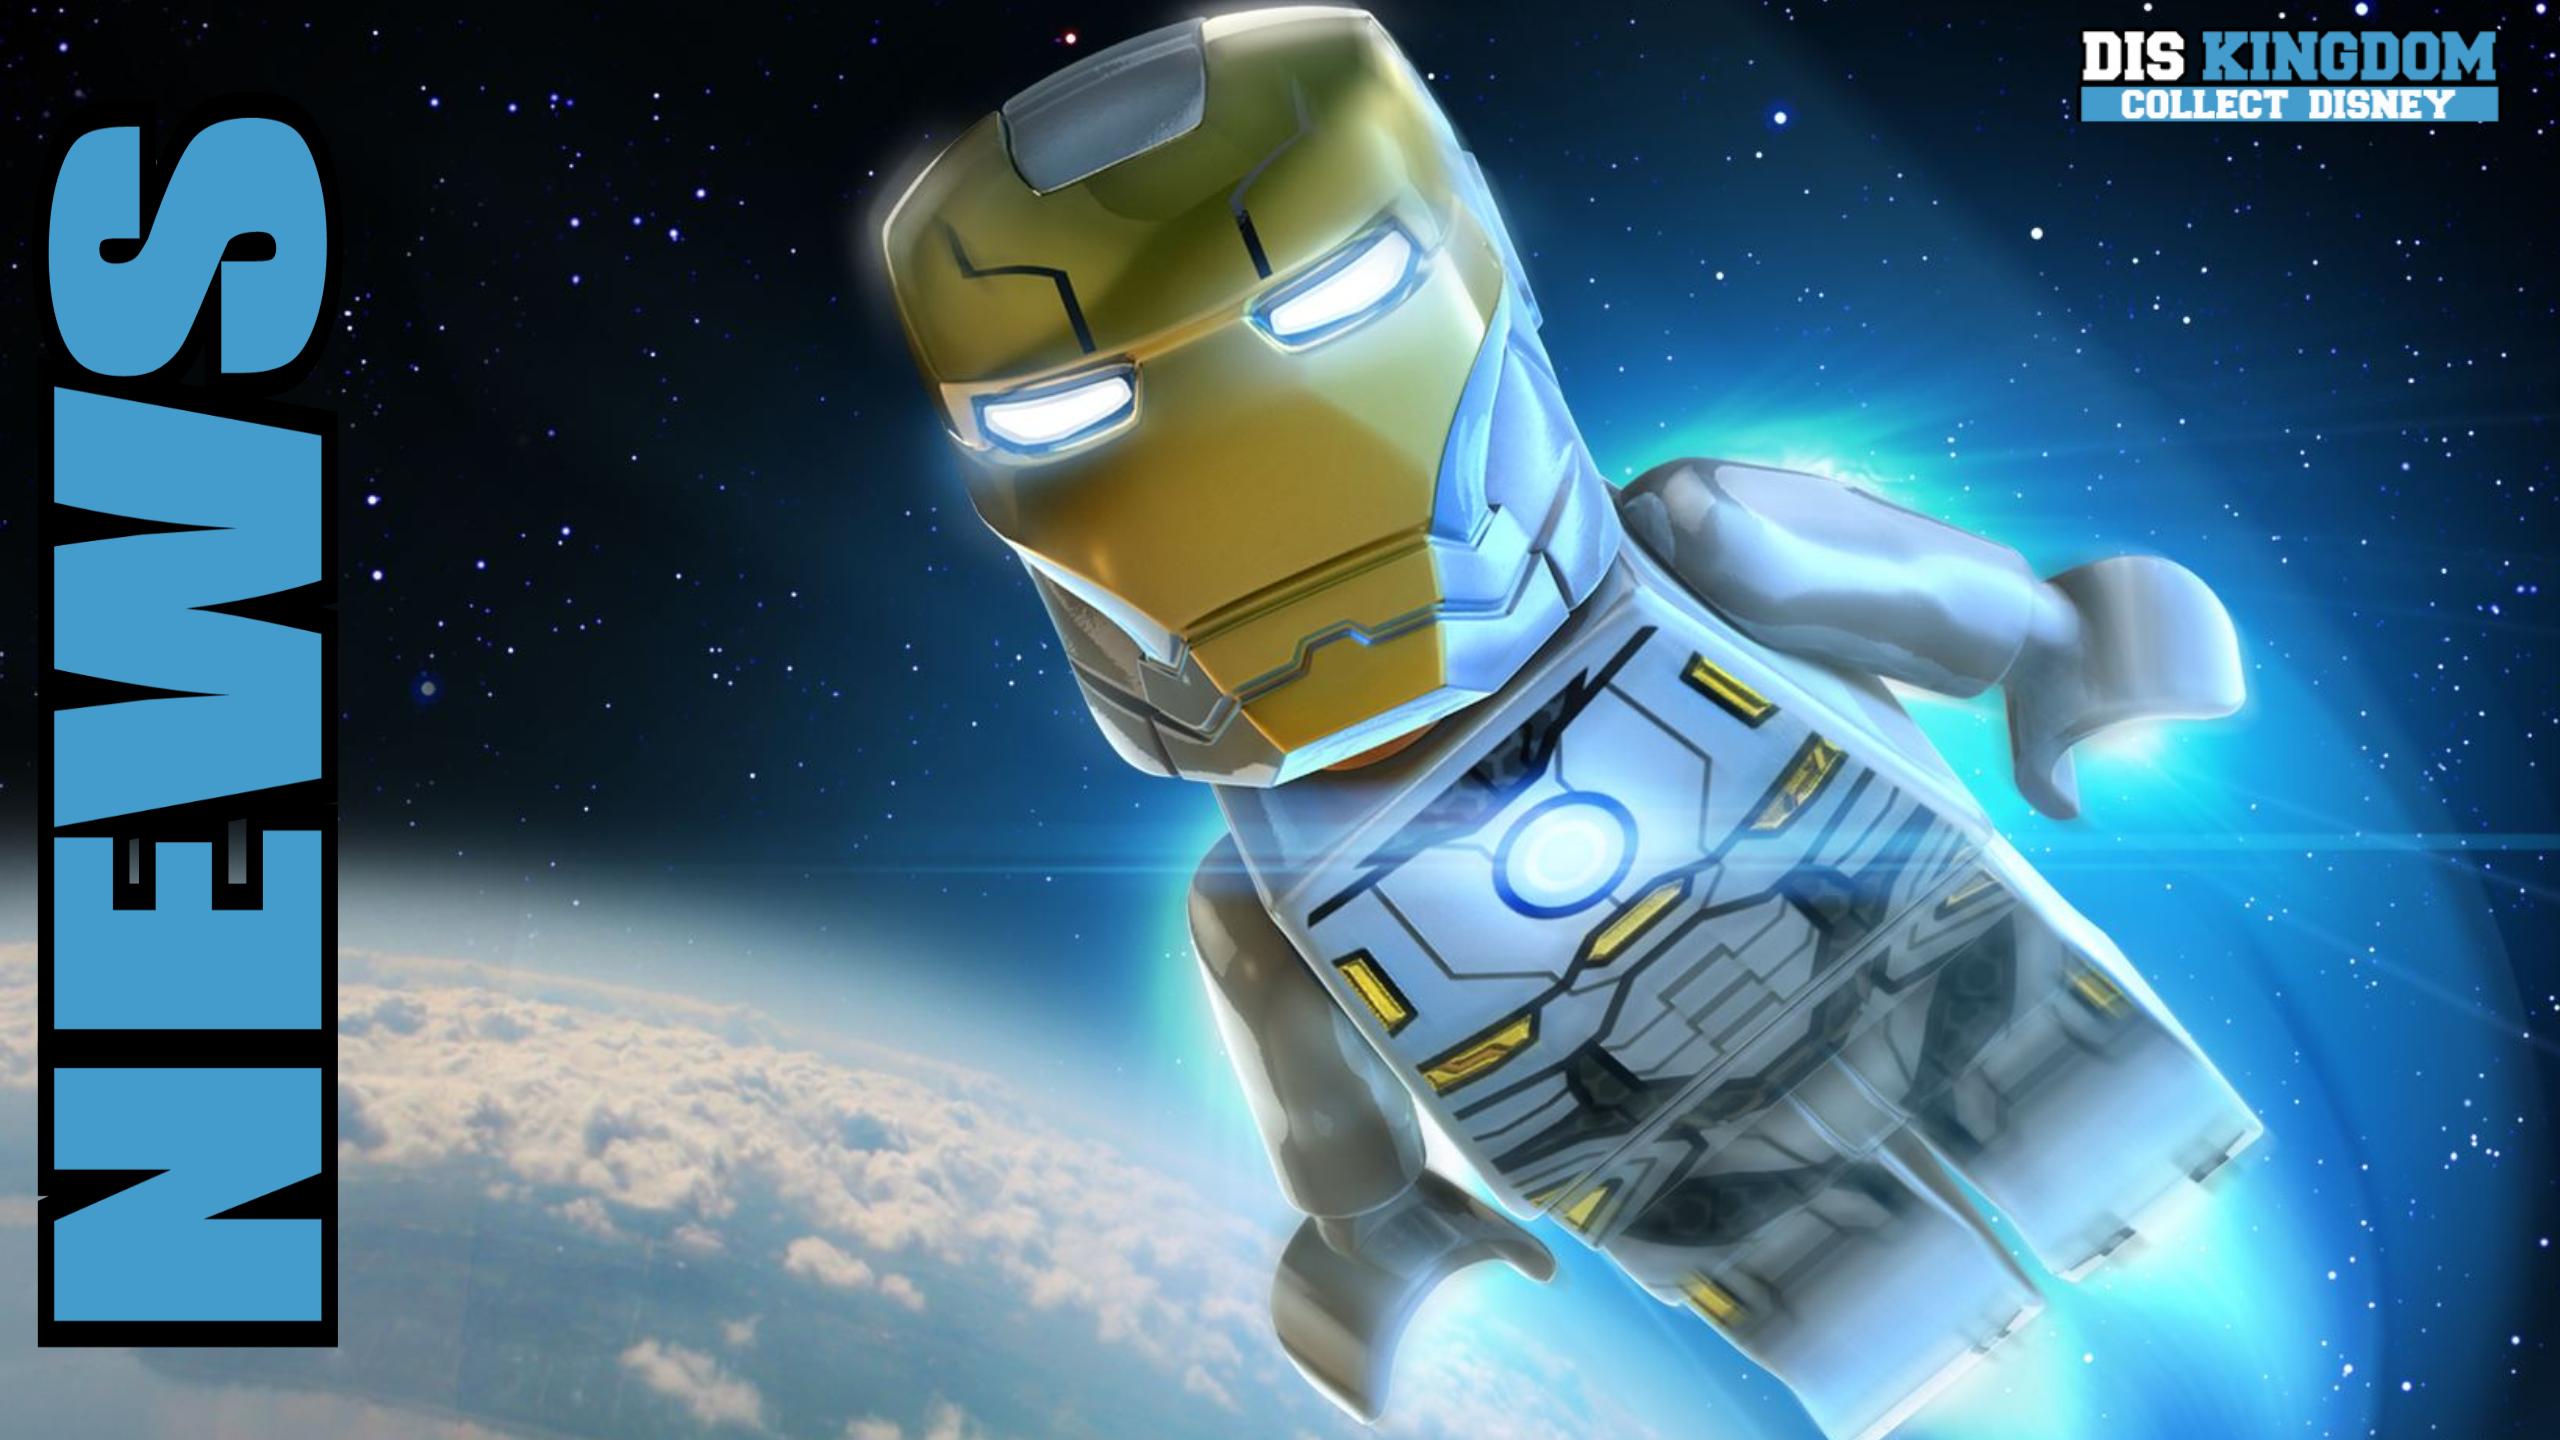 Lego Marvel's Avengers season pass detailed